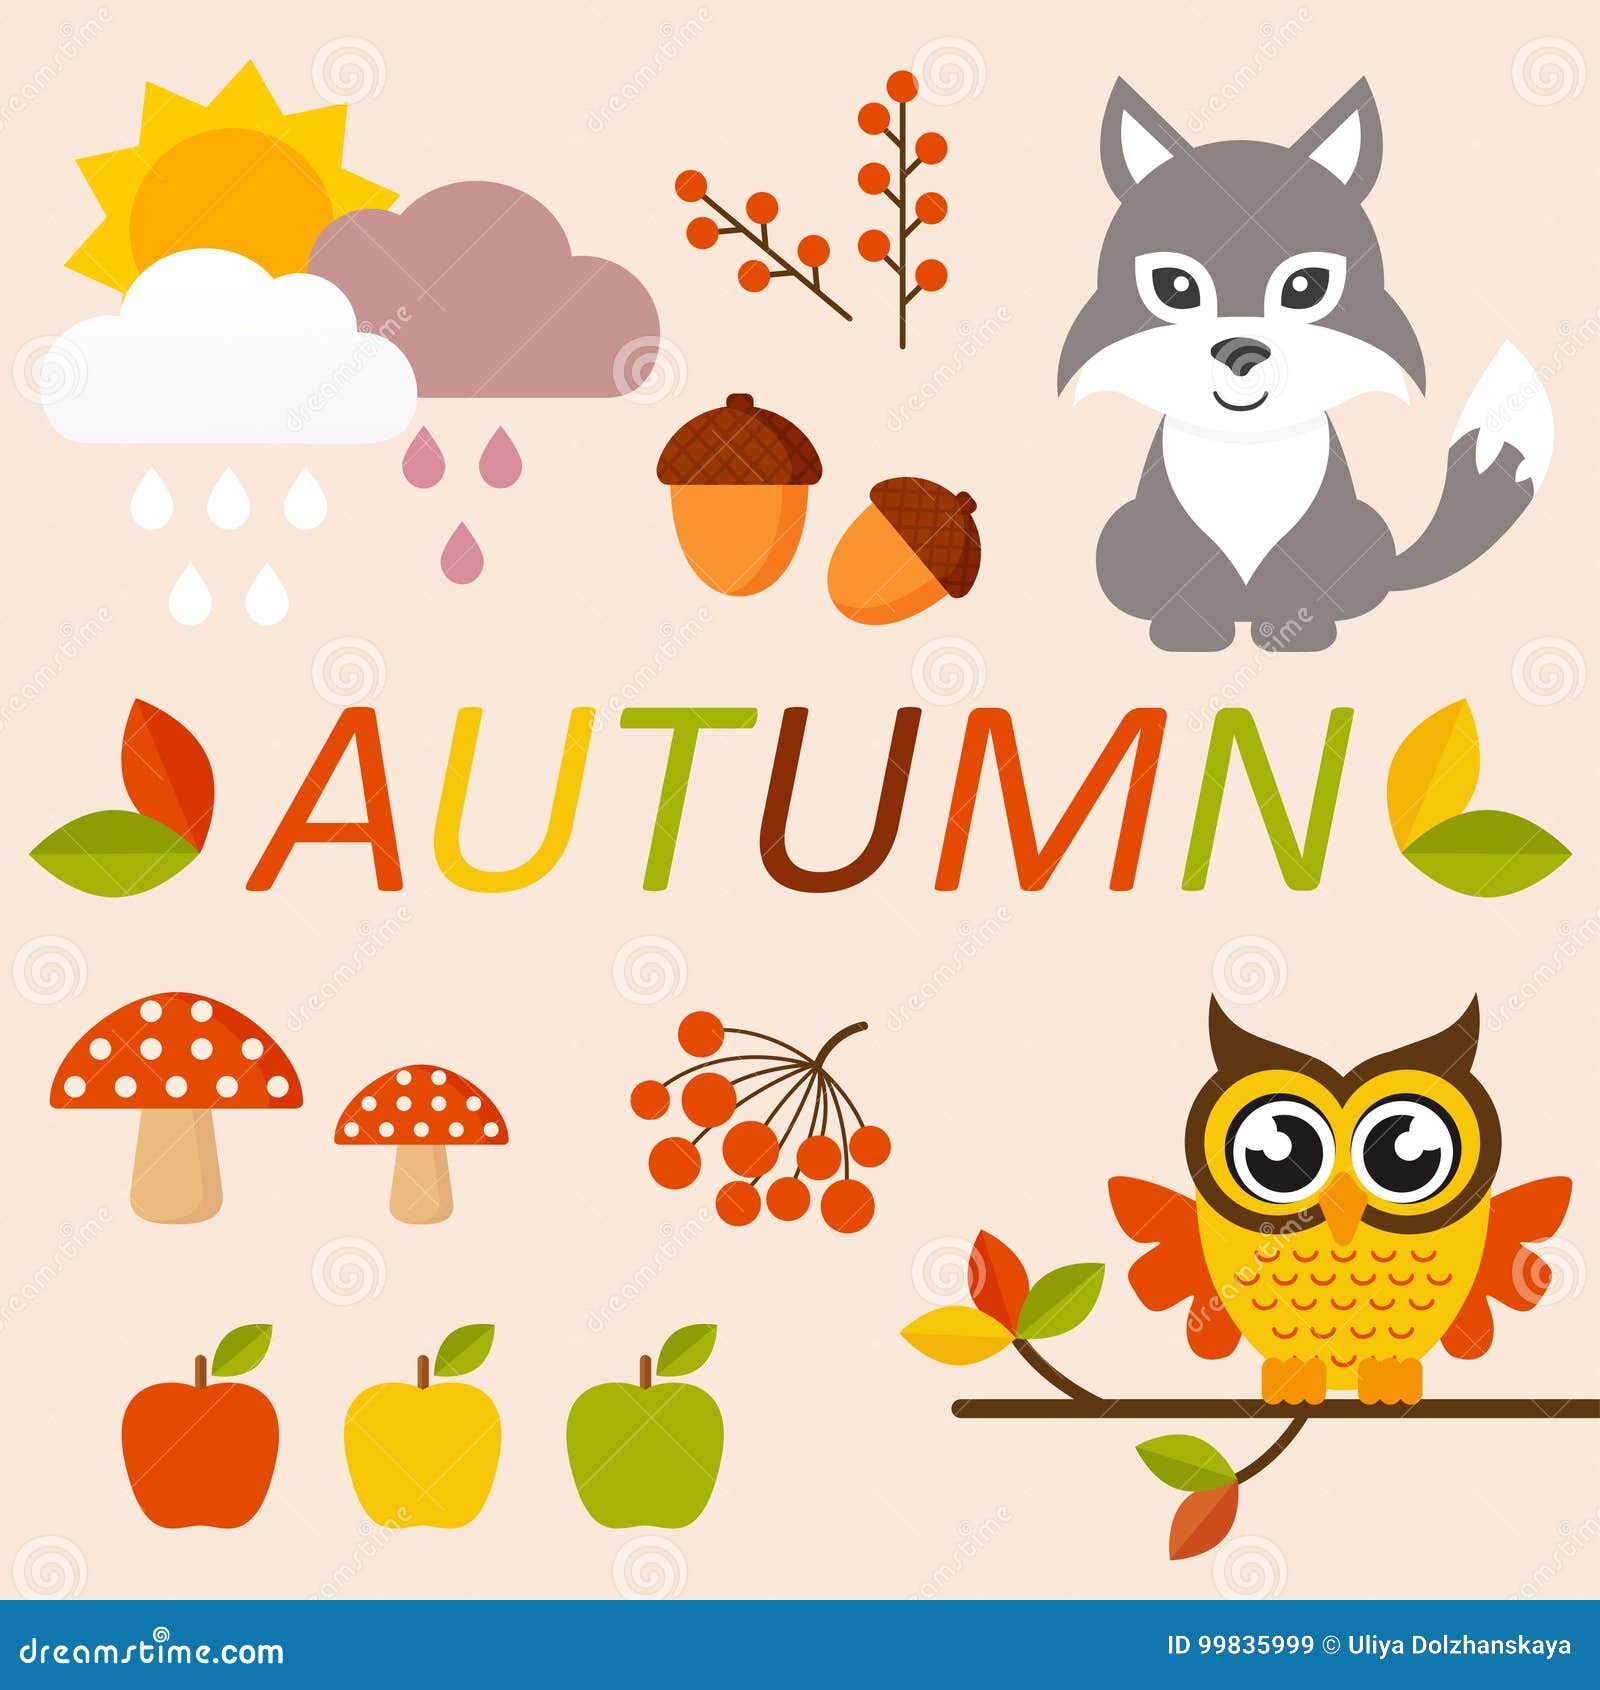 Cartoon autumn animals stock illustration. Illustration of apple - 99835999